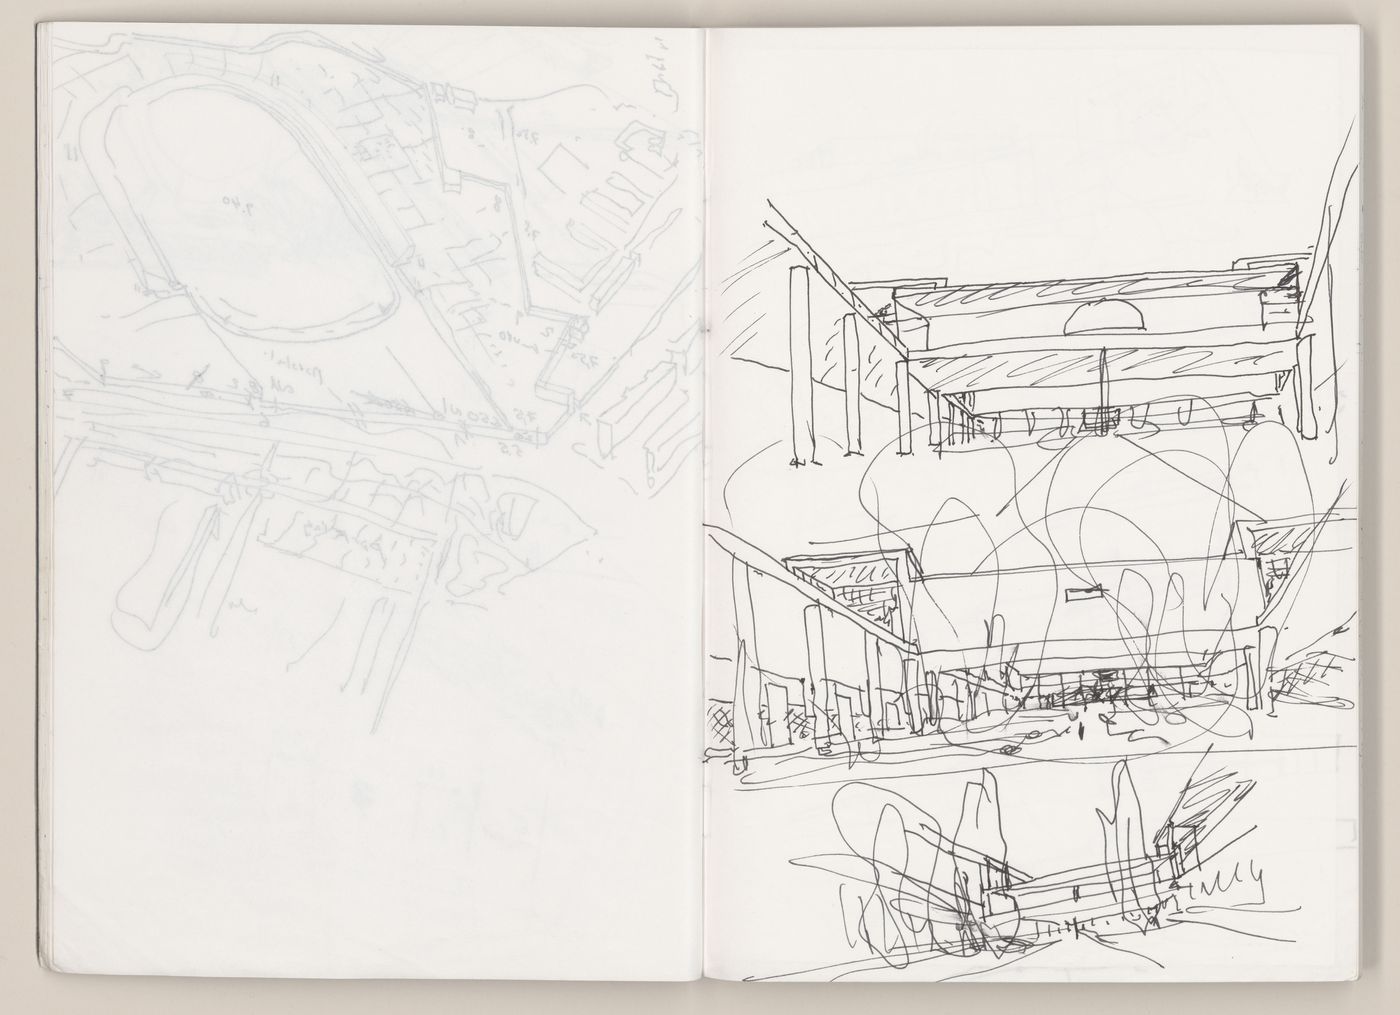 Sketchbook 395: I Museu Amsterdam-Rossio Evora-Palermo-Montreuil-Interiores Alicante